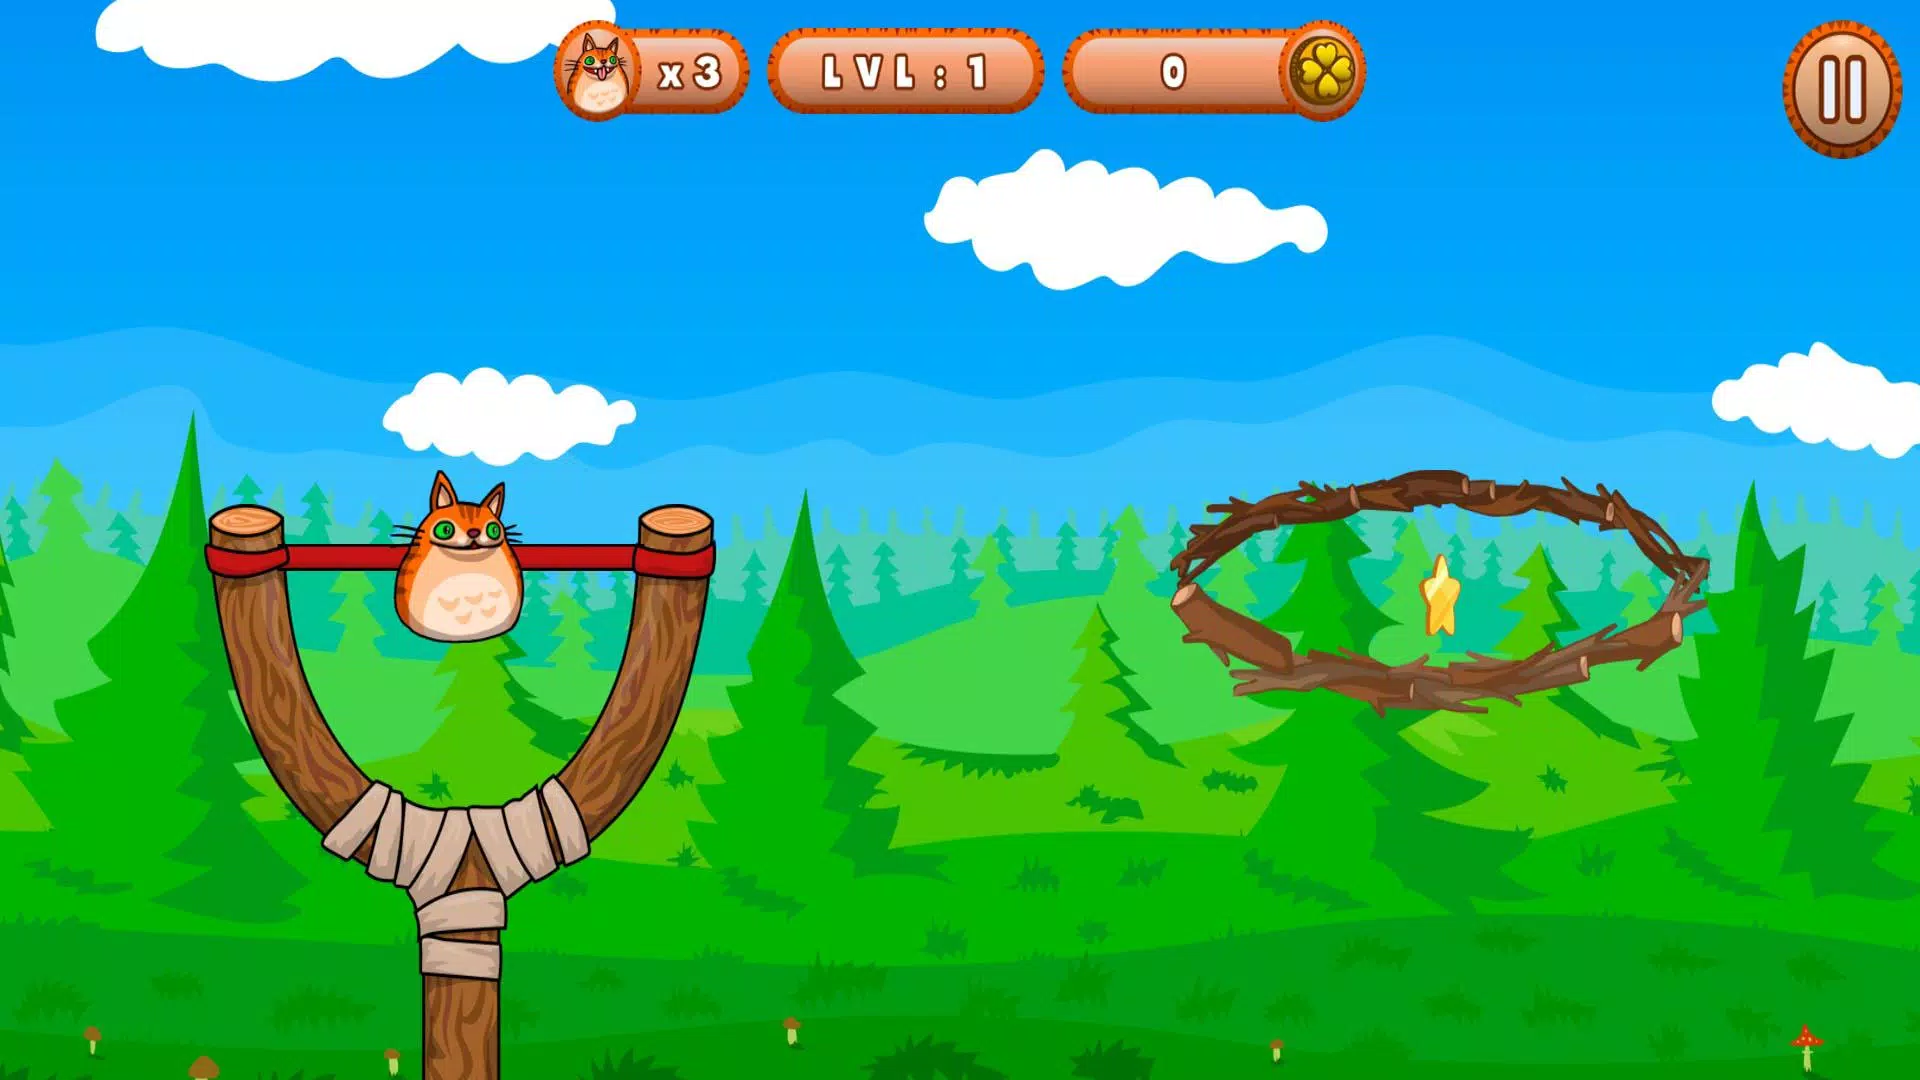 Download do APK de 50+ Jogos infantis para Android